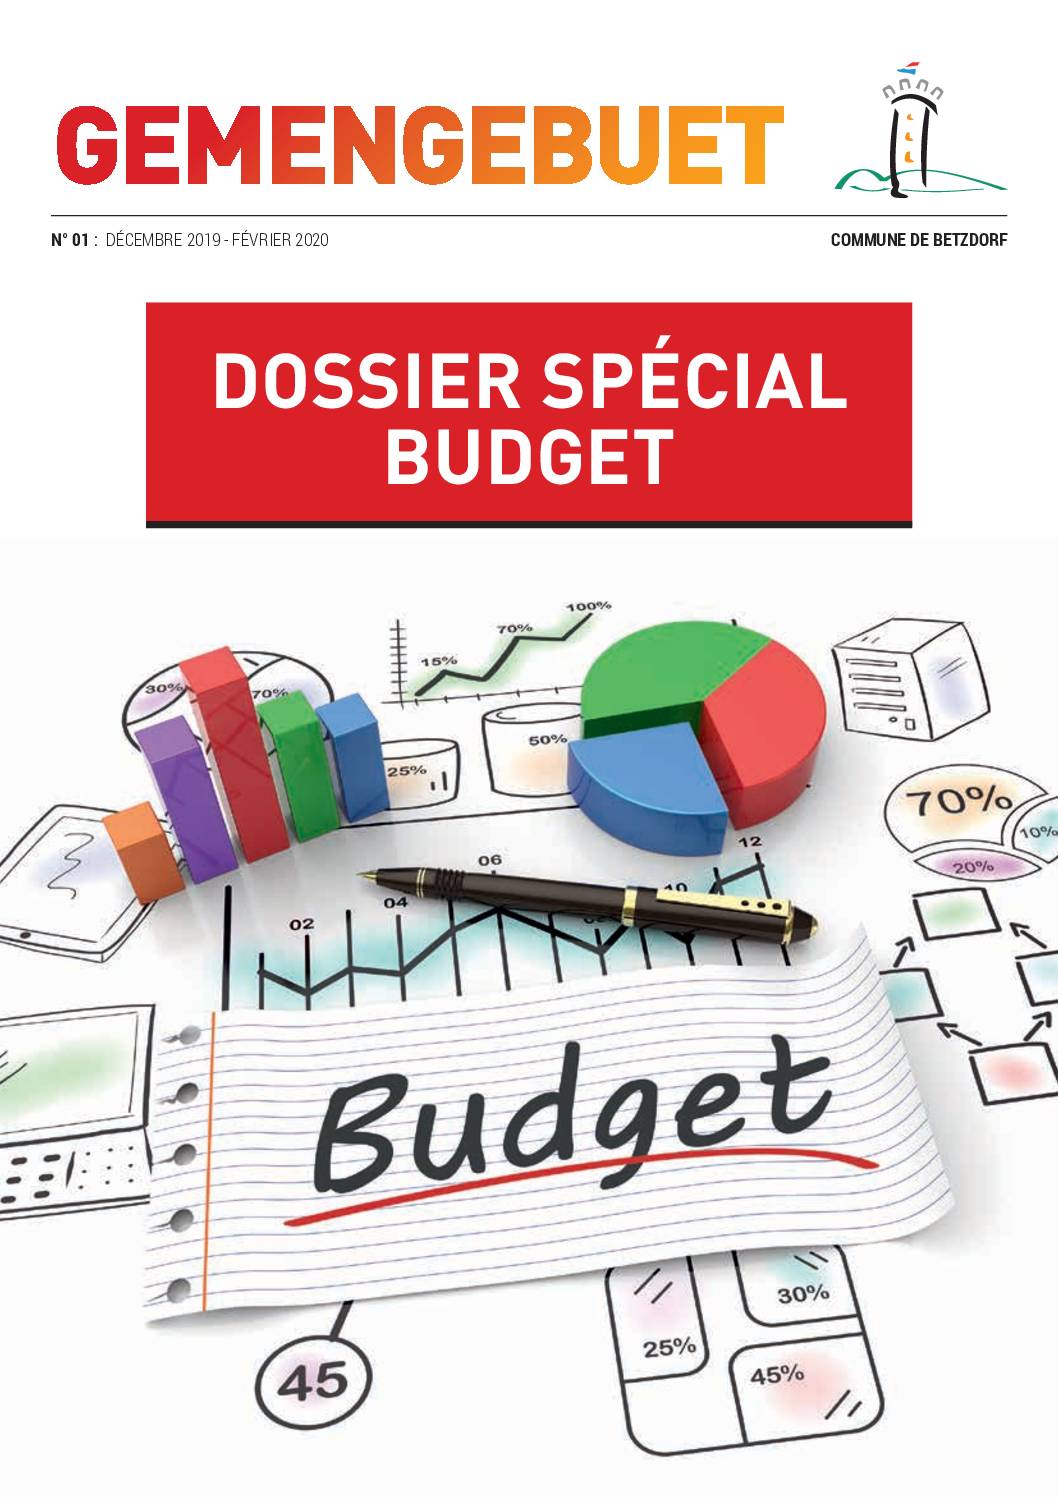 Gemengebuet - Dossier Spécial Budget 2020